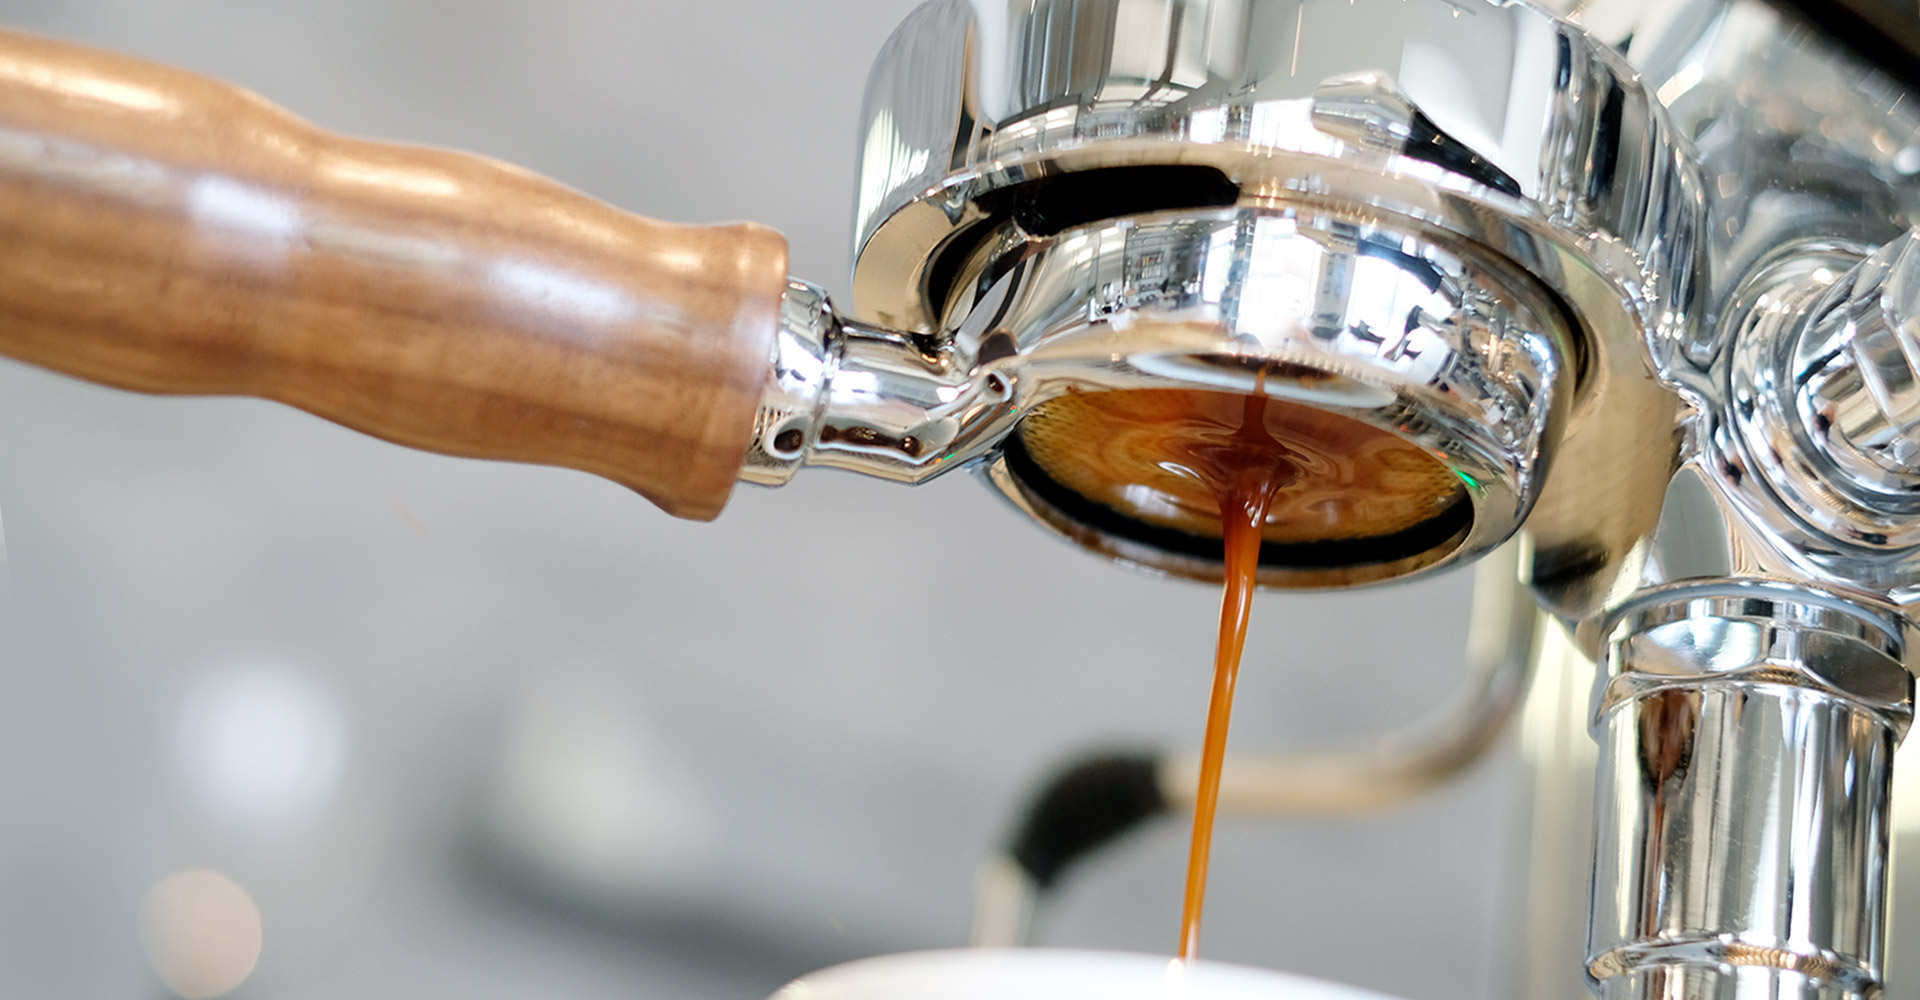 Kaffee läuft aus einer Kaffeemaschine in eine Tasse